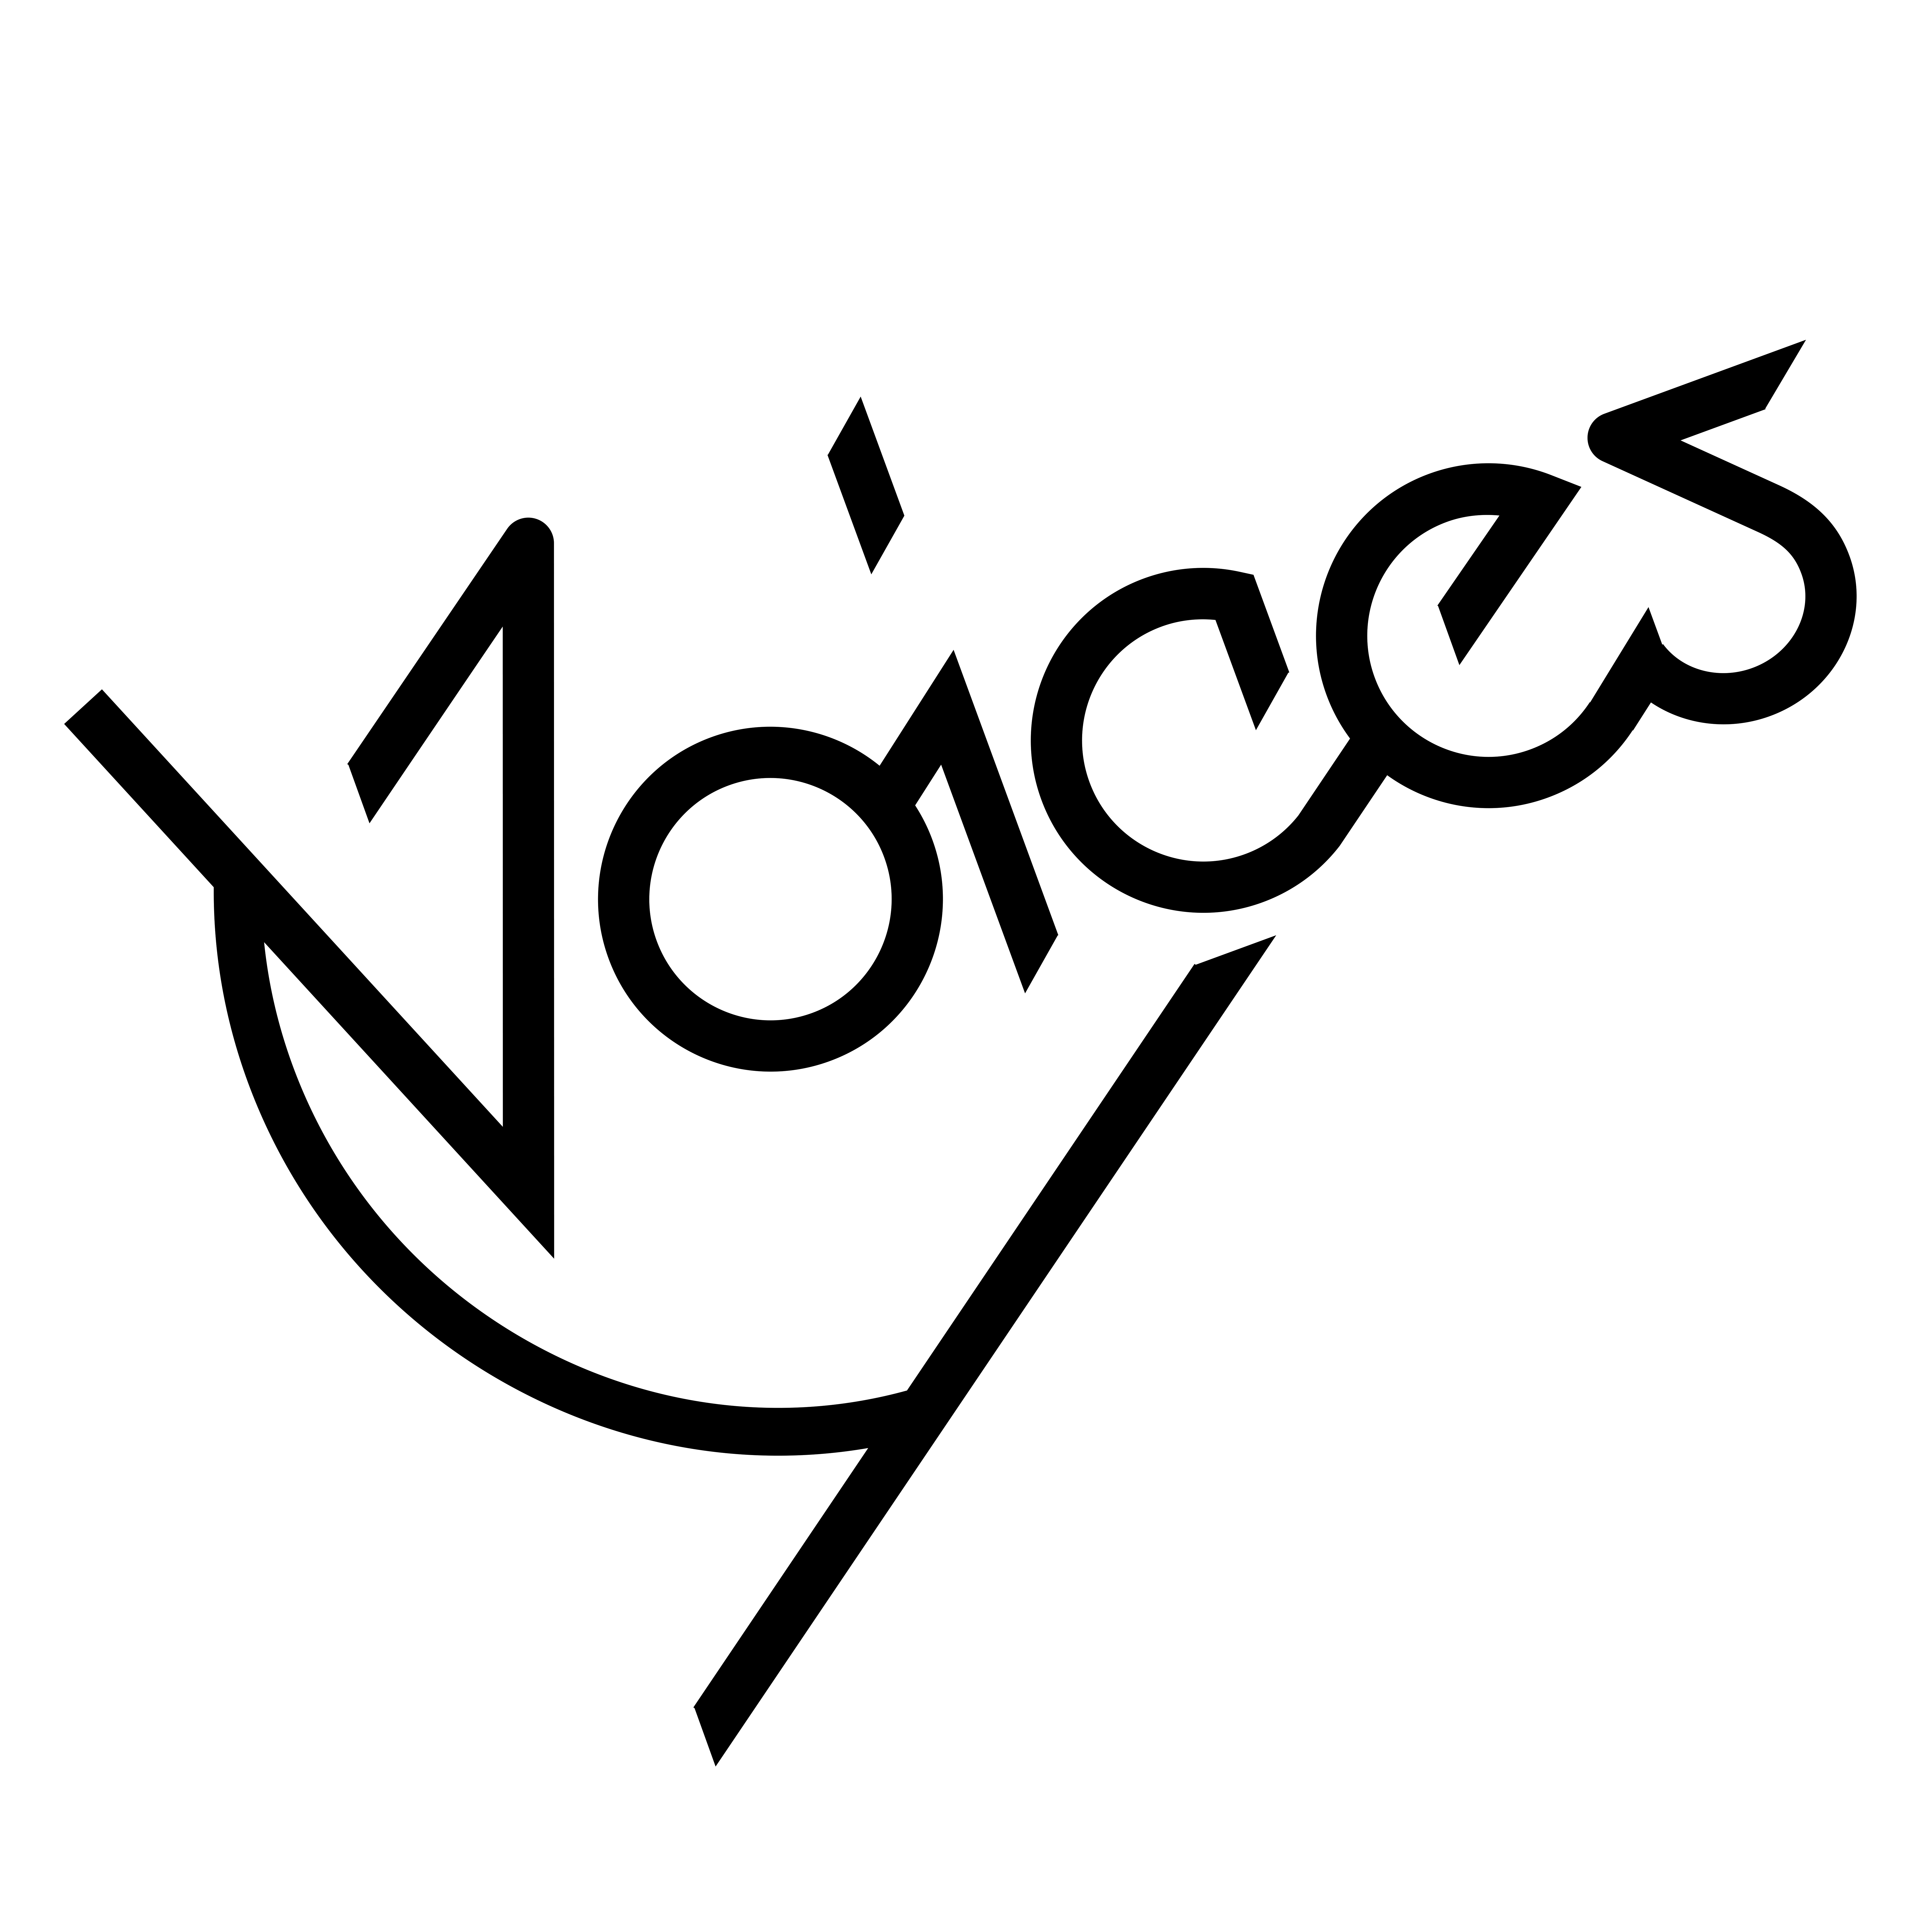 voices_logo-1.jpg